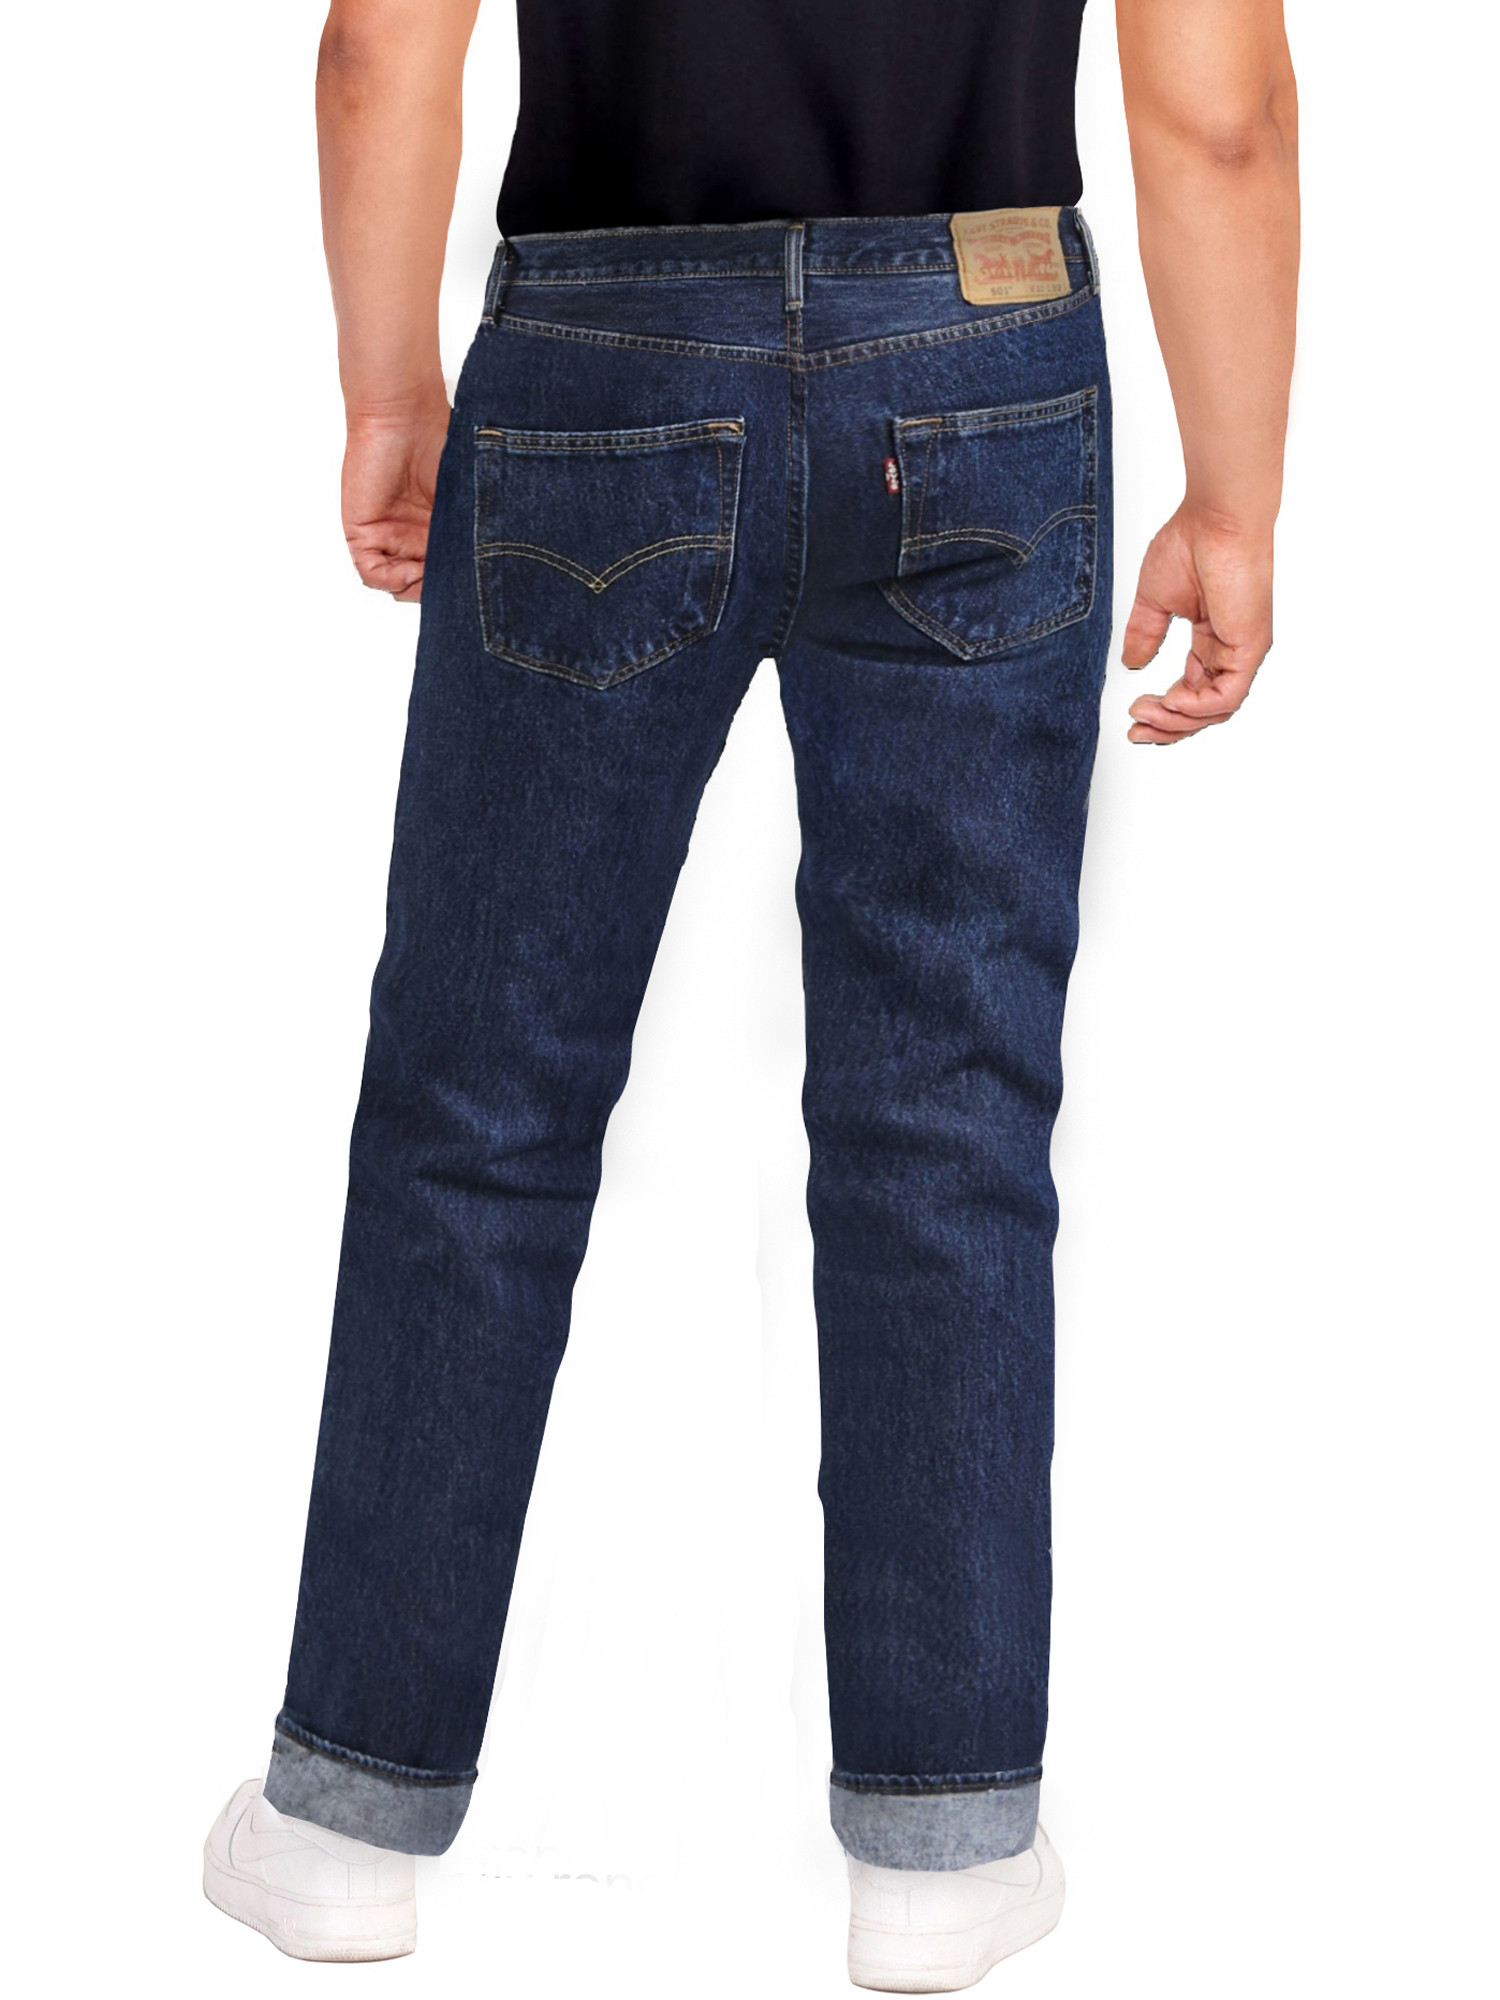 Levi's Men's 501 Original Fit Jeans - image 7 of 9